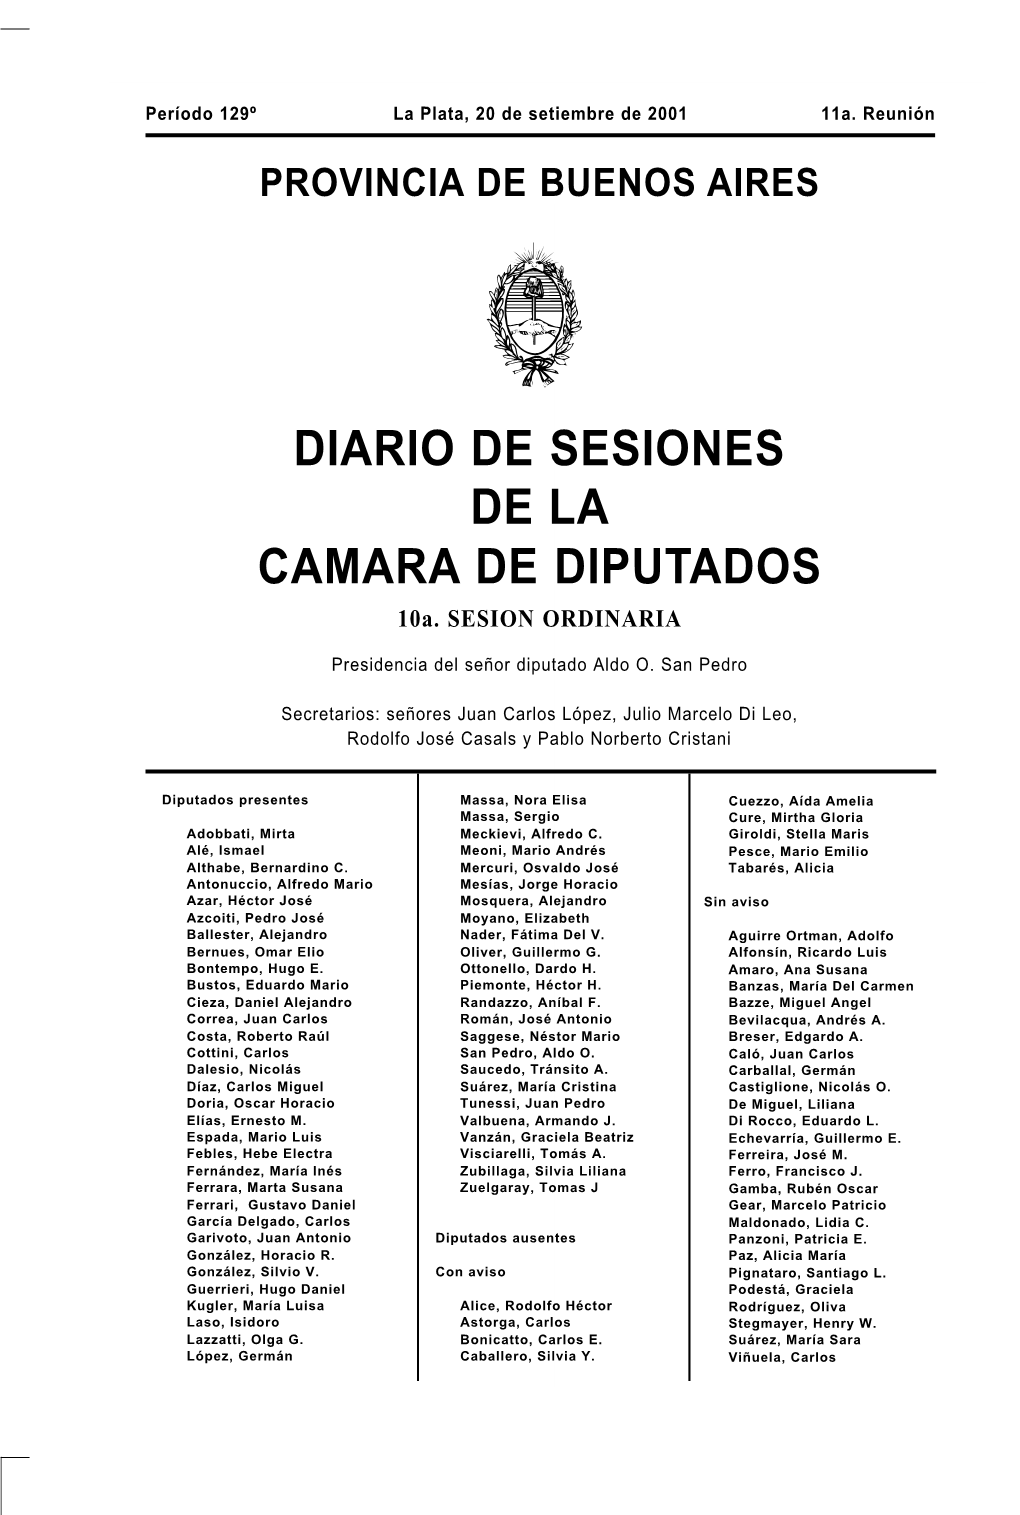 DIARIO DE SESIONES DE LA CAMARA DE DIPUTADOS 10A